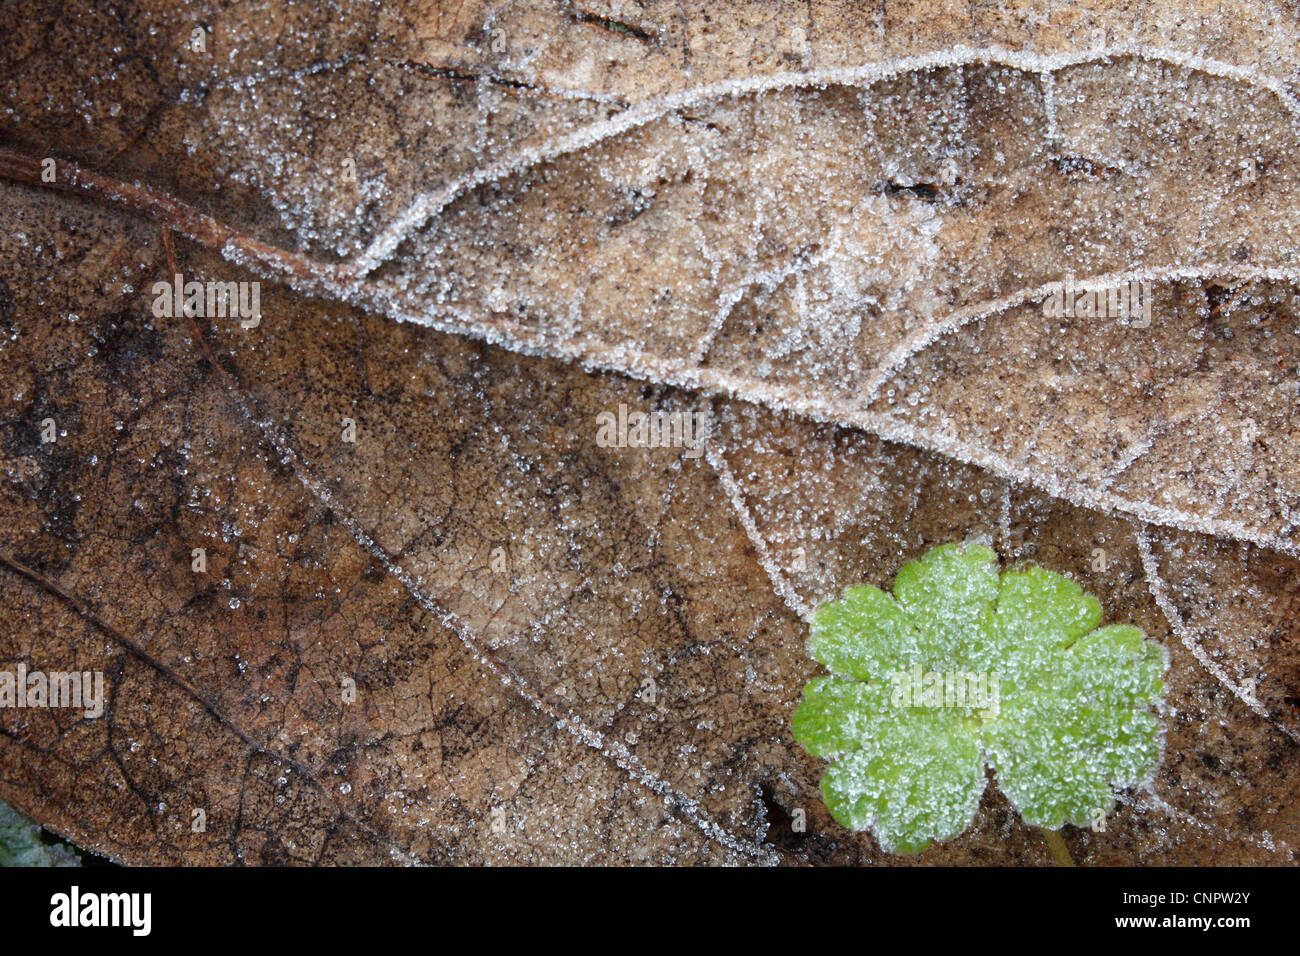 Una composición de una hoja congelada con un trébol (congelados) en el ángulo sudoriental tomadas en un frío día de invierno. Foto de stock